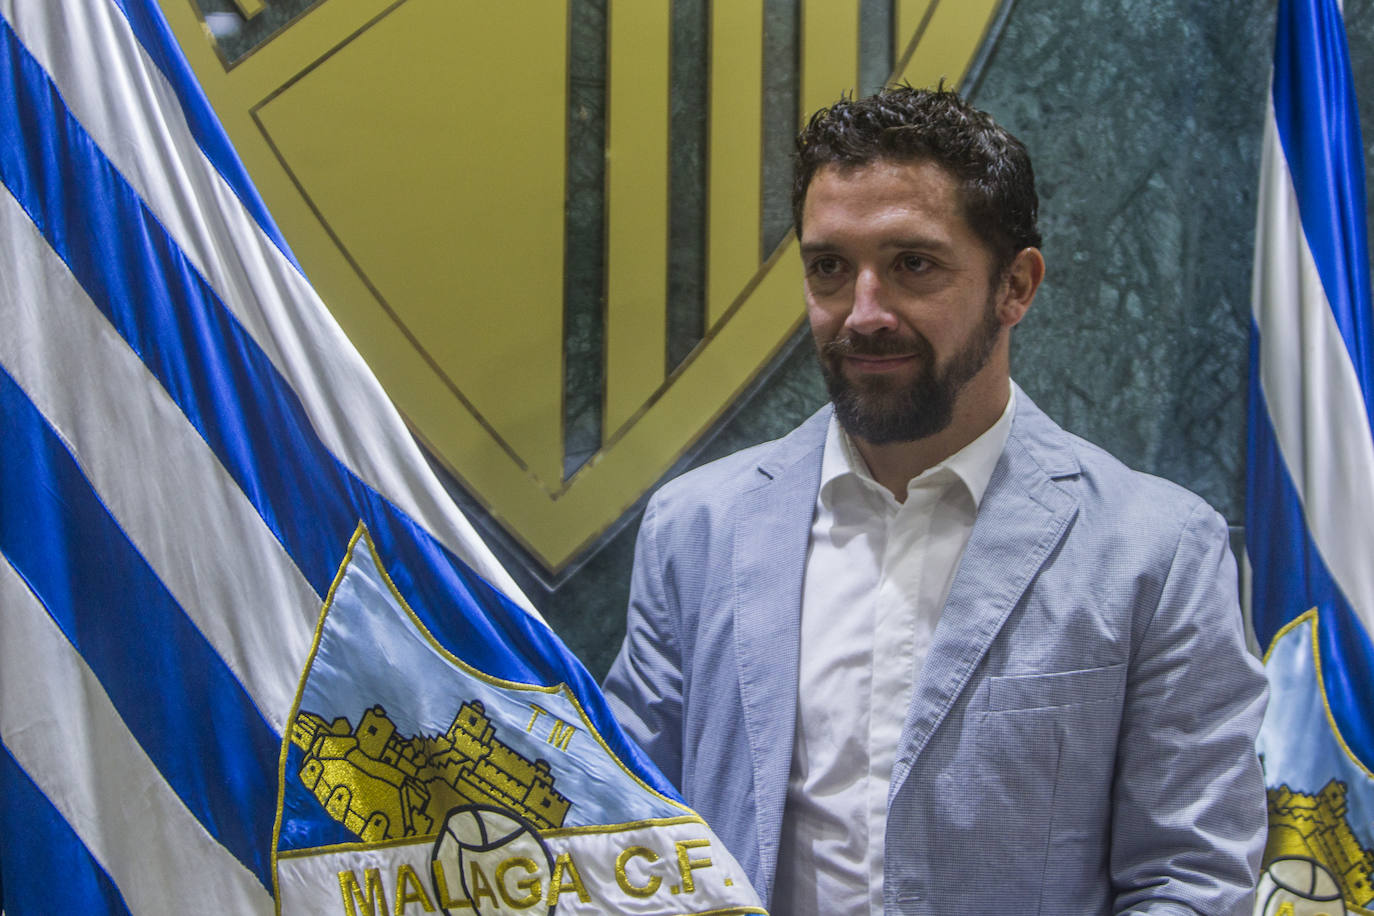 El centrocampista chileno, uno de los del Málaga de Champions, y que en 2017 volvió para ser testigo de un catastrófico descenso a Segunda, se retira del fútbol con 35 años. Aquí un repaso fotográfico a su paso por el Málaga en dos etapas muy distintas. 